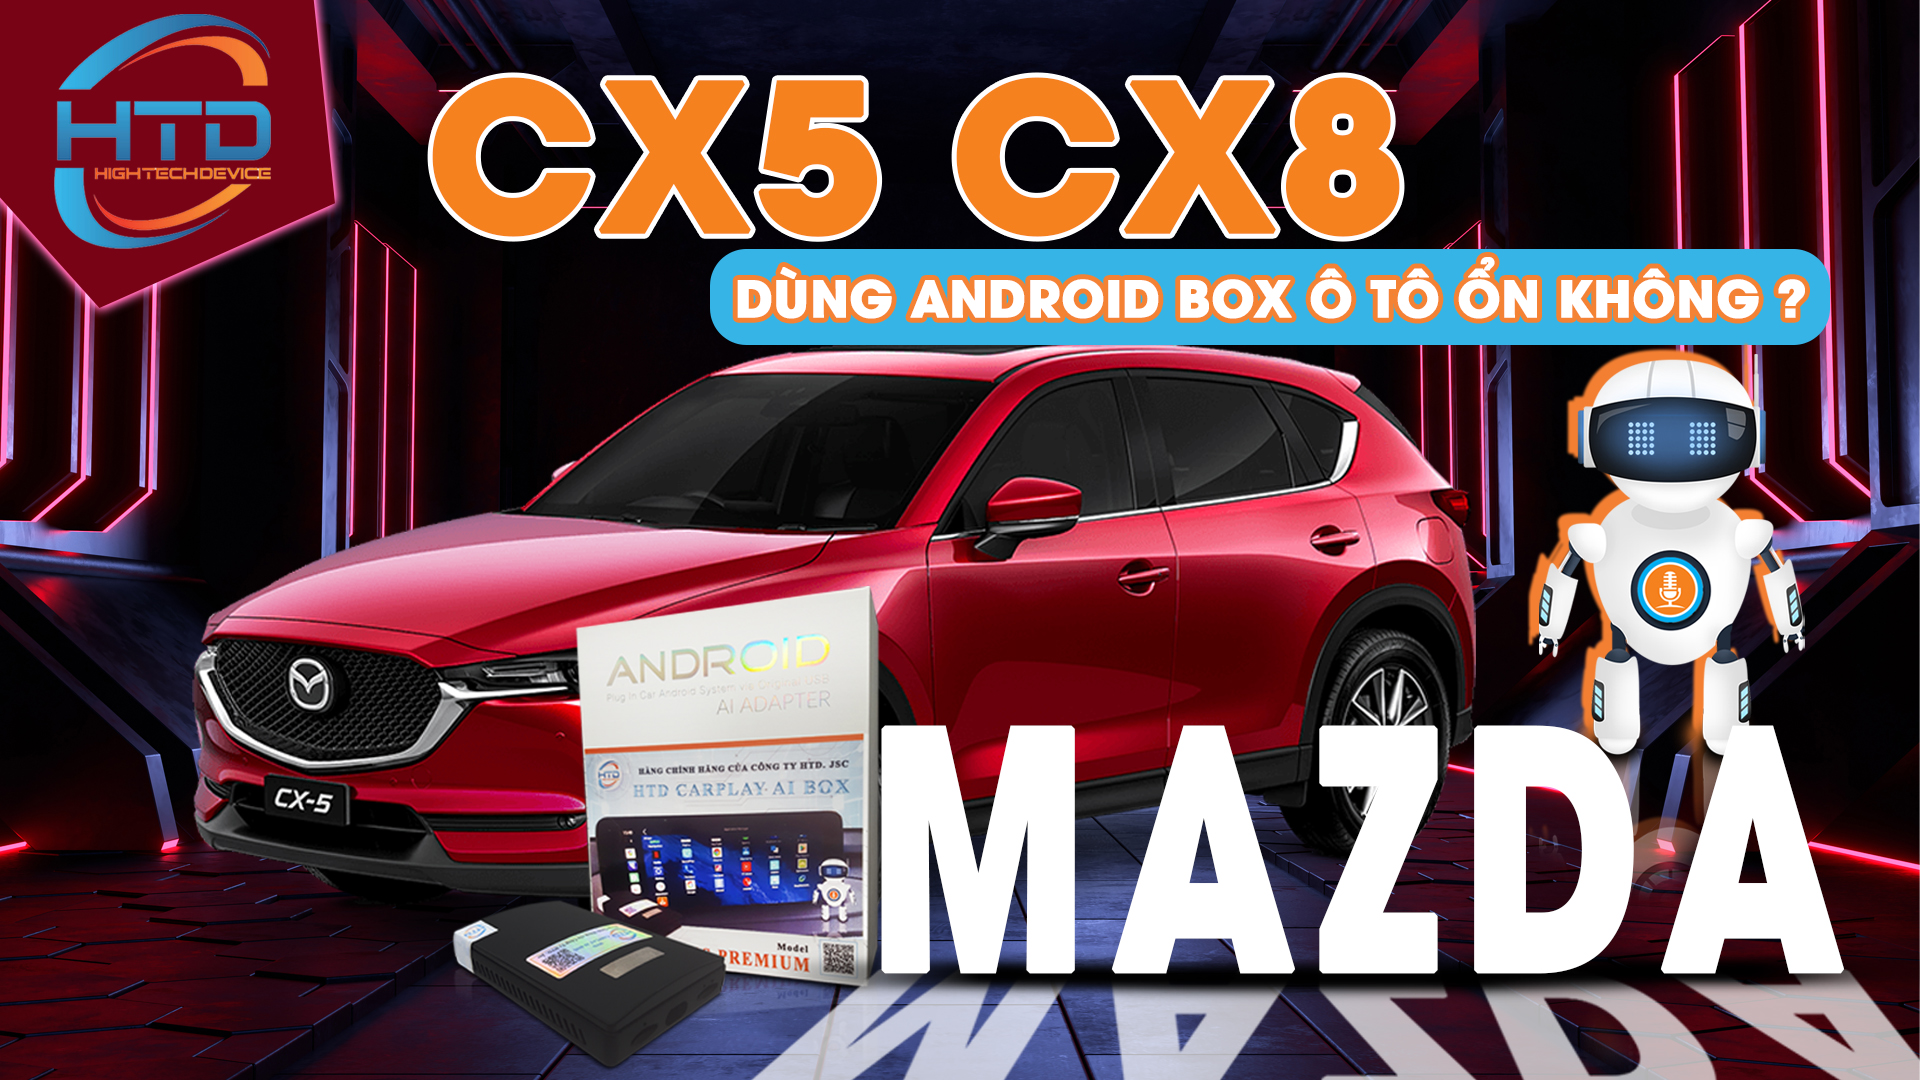 Dòng xe "Mazda CX5 CX8" lắp android box cho ô tô được không 2022?